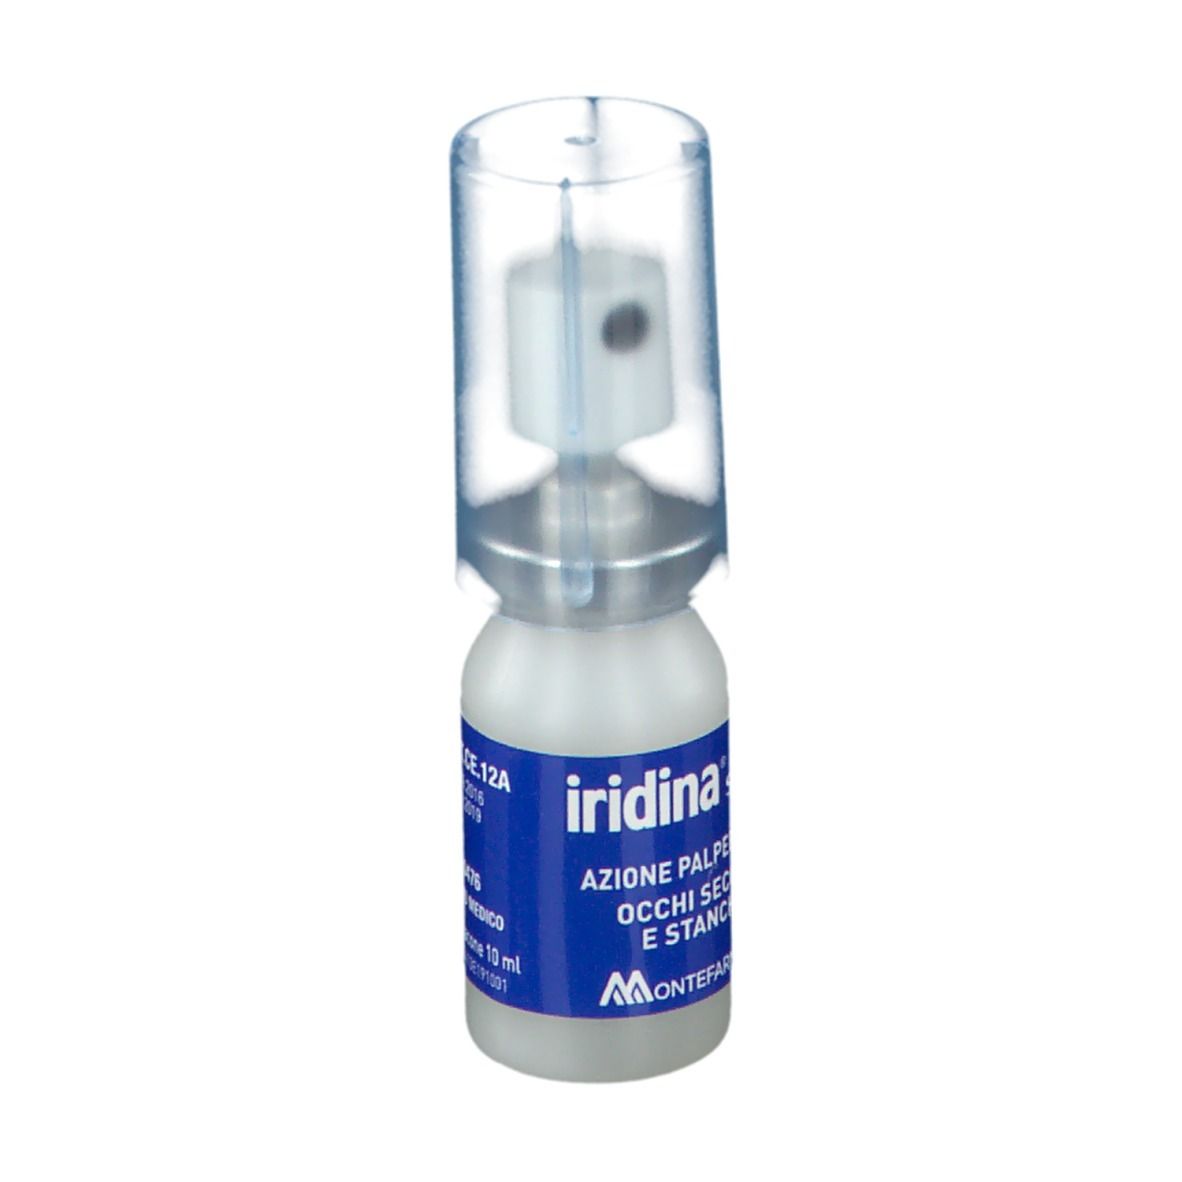 iridina® Spray Azione Palpebrale Occhi Secchi e Stanchi